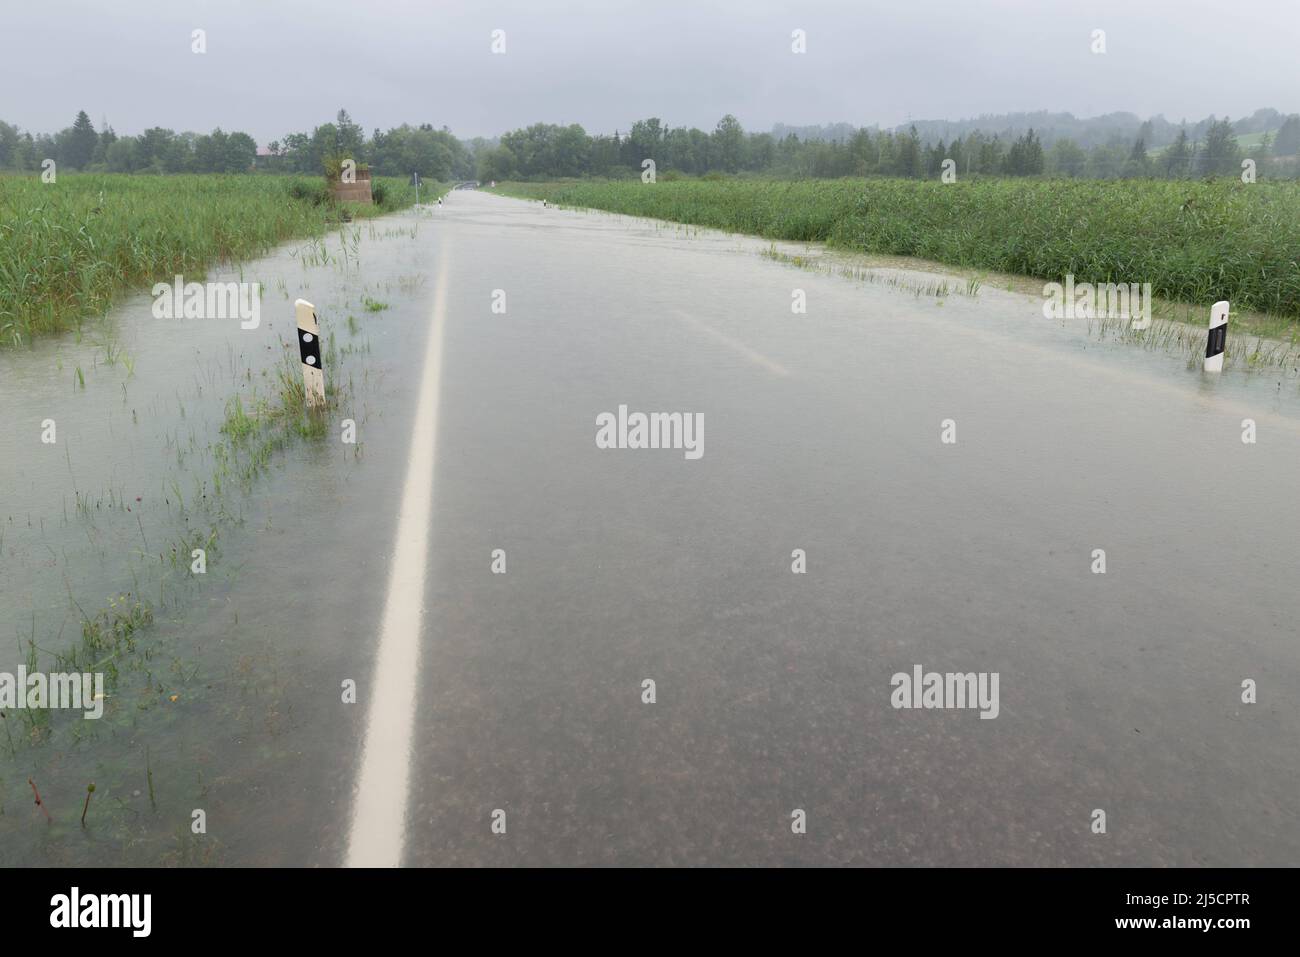 Nach anhaltenden Starkregen in Bayern sind einige Straßen komplett überflutet. [Automatisierte Übersetzung] Stockfoto